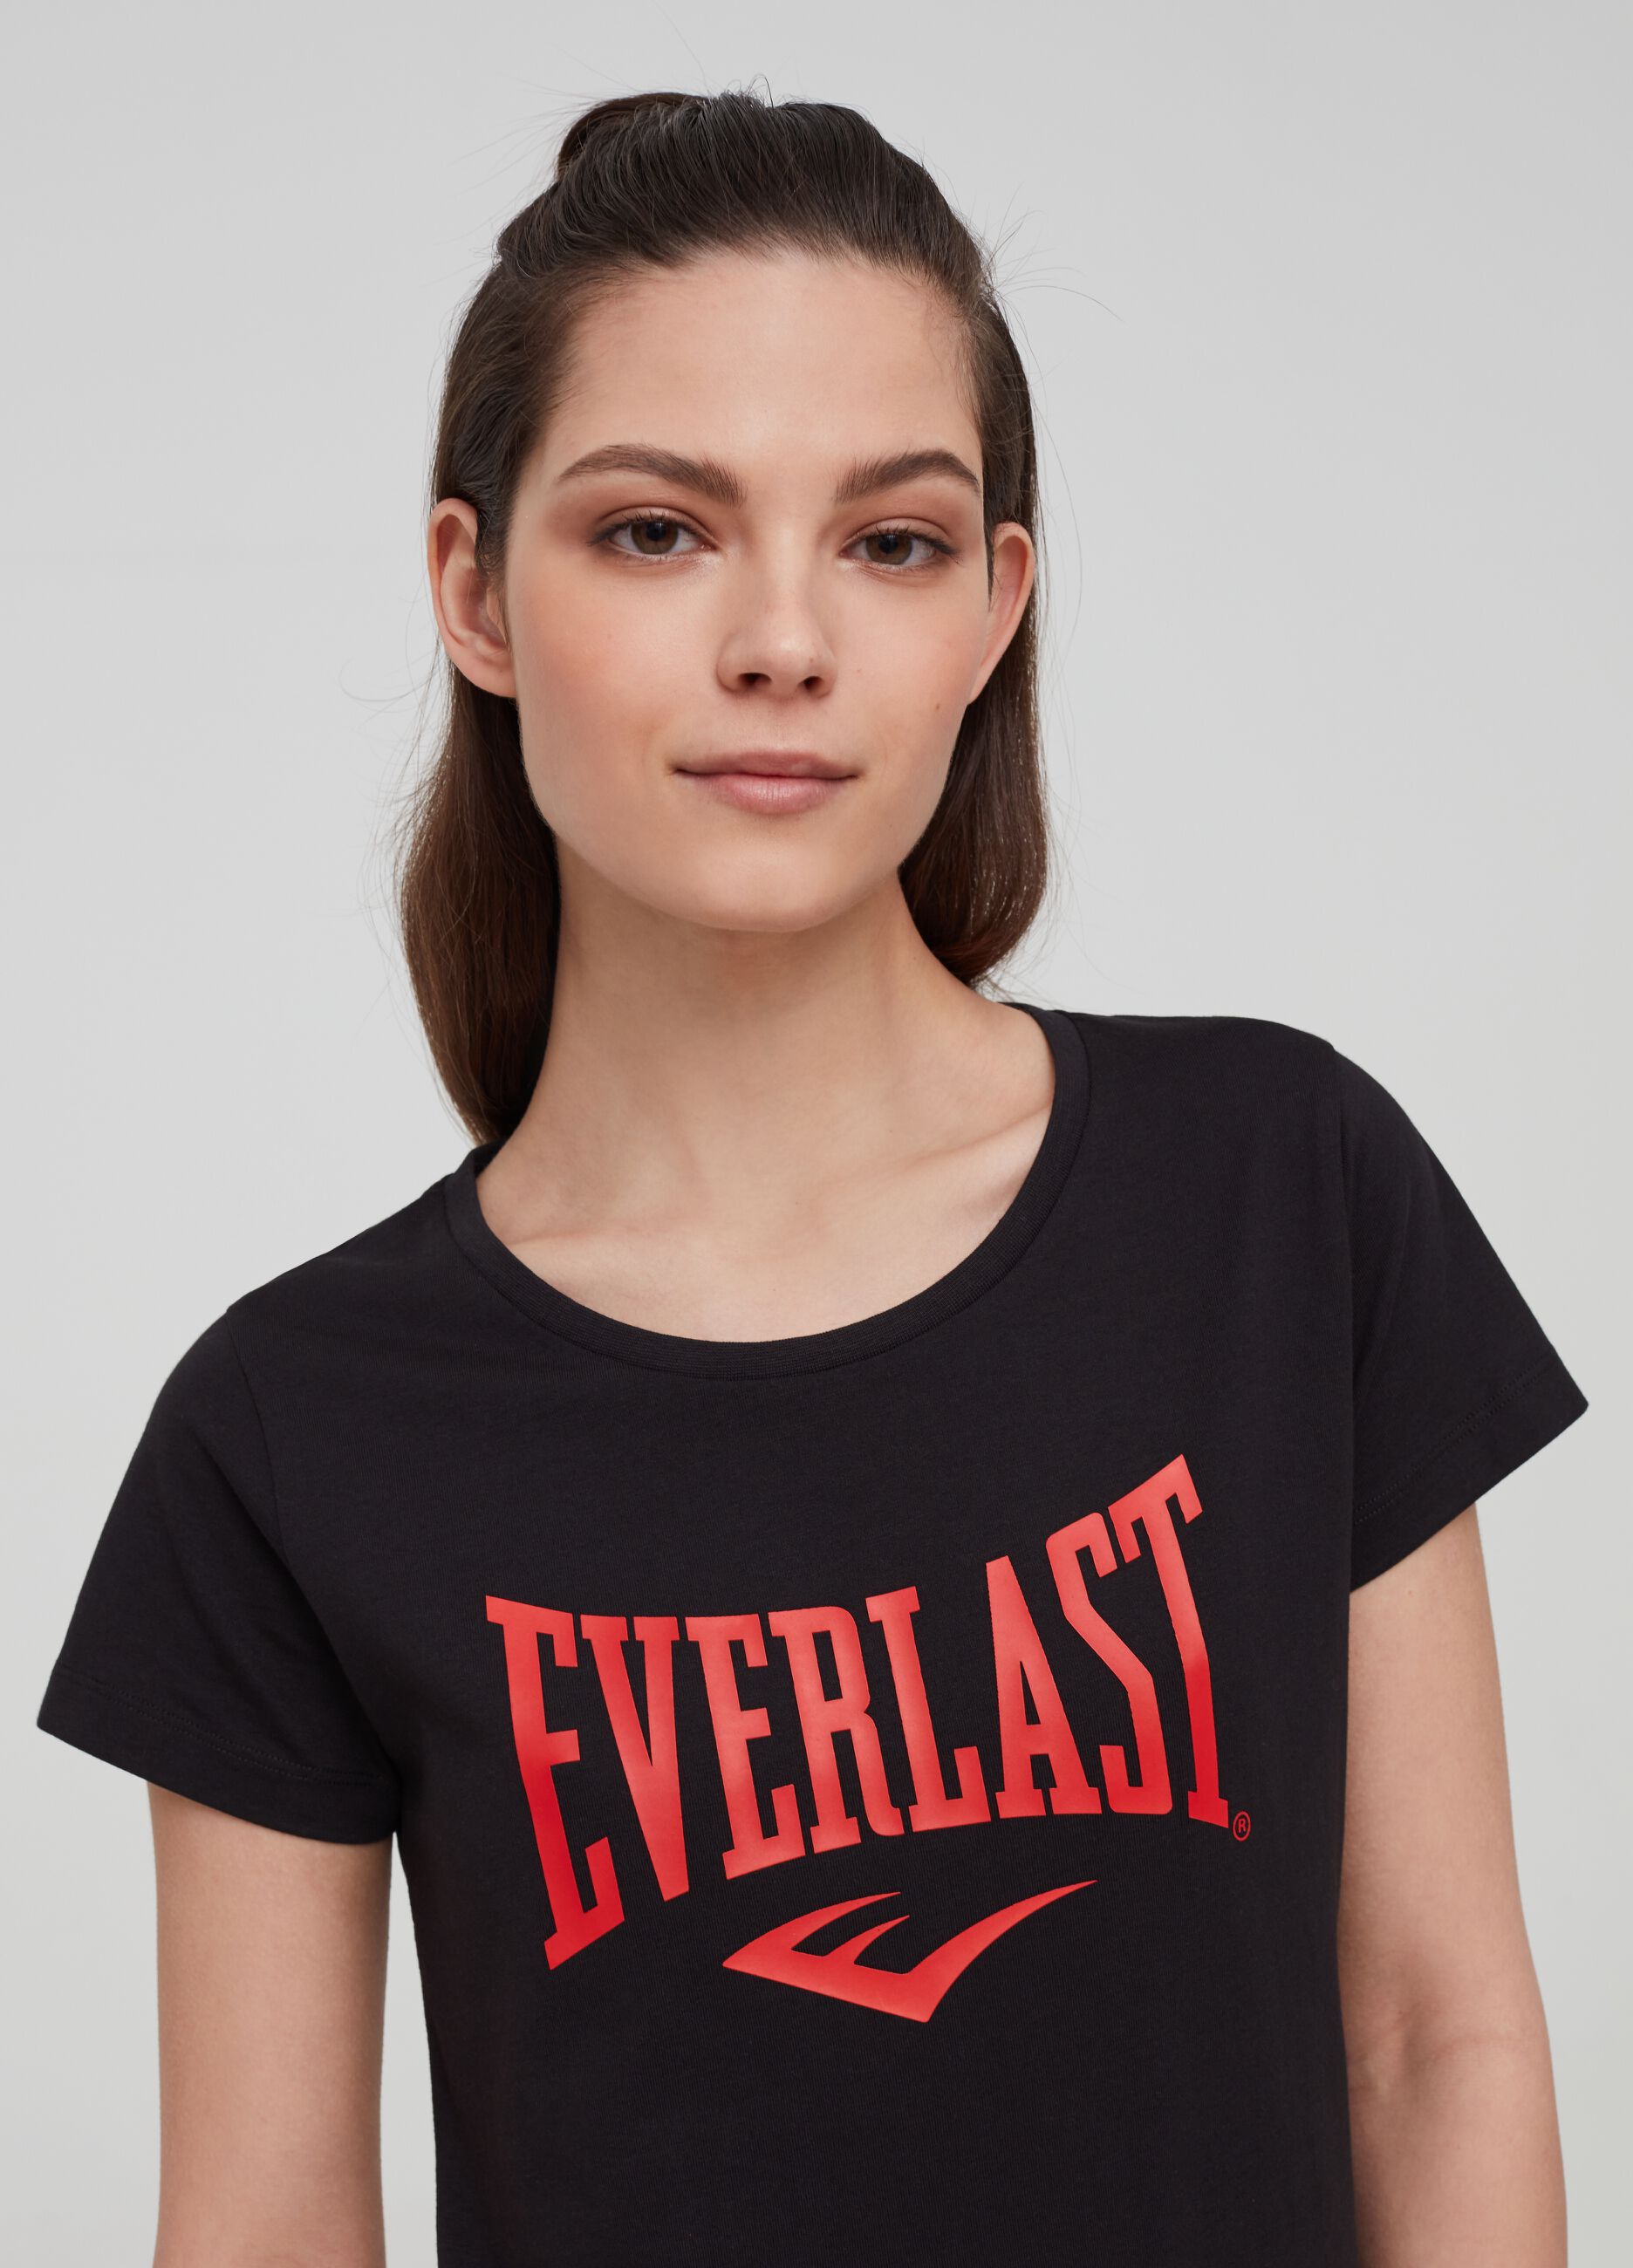 T-shirt puro cotone con stampa Everlast